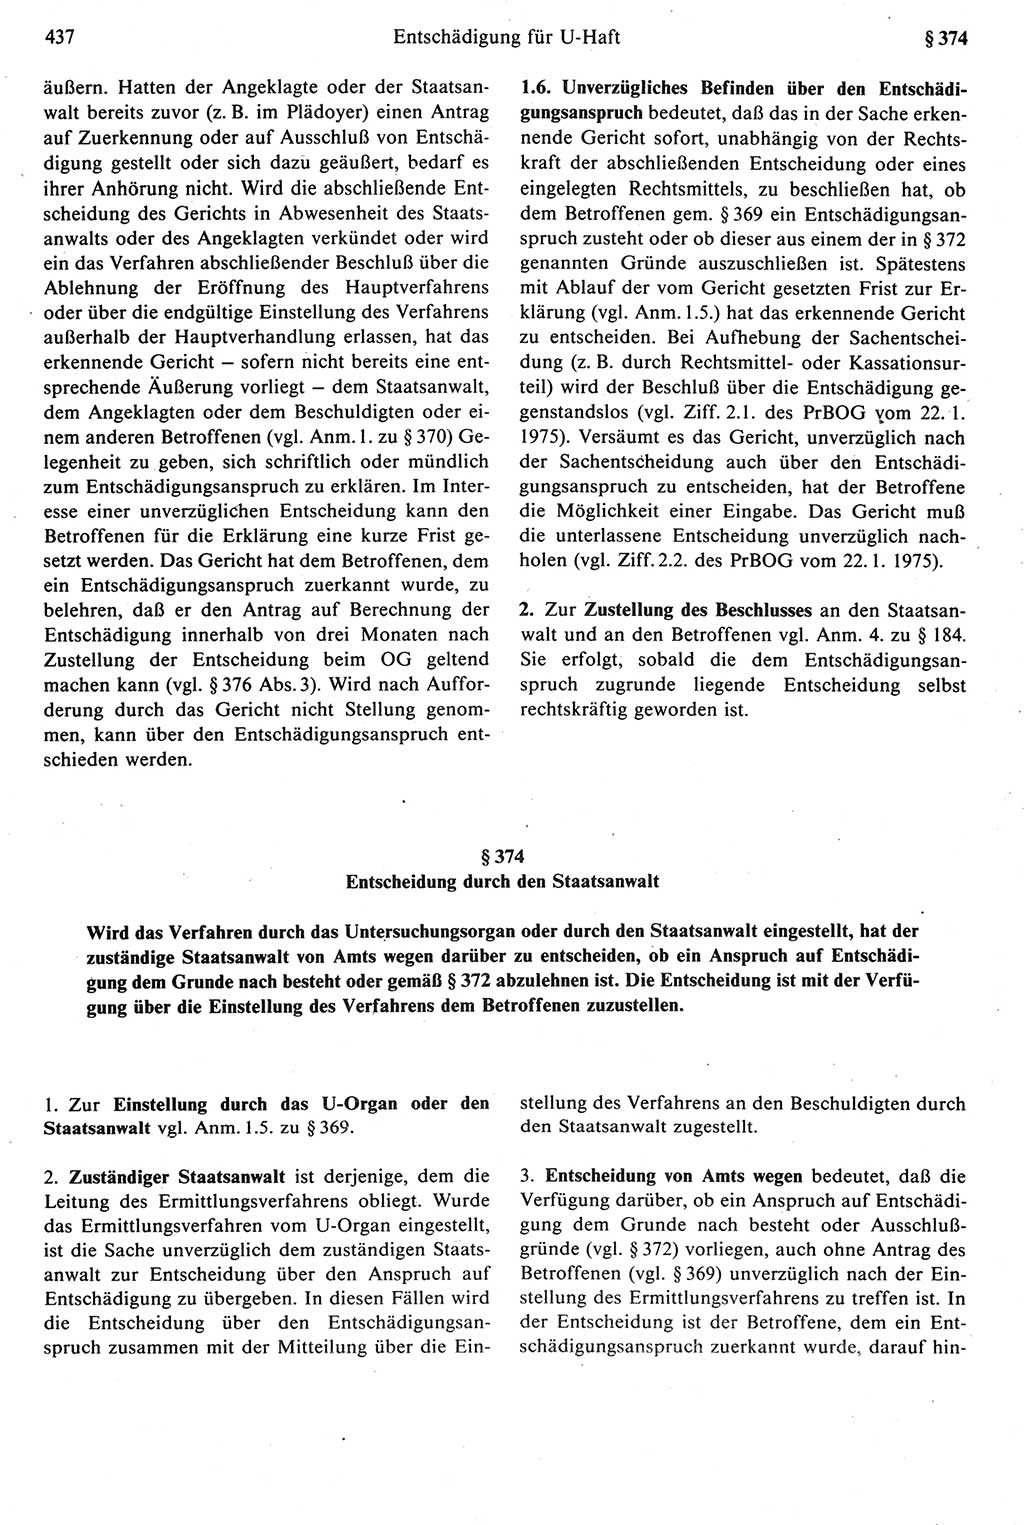 Strafprozeßrecht der DDR [Deutsche Demokratische Republik], Kommentar zur Strafprozeßordnung (StPO) 1987, Seite 437 (Strafprozeßr. DDR Komm. StPO 1987, S. 437)